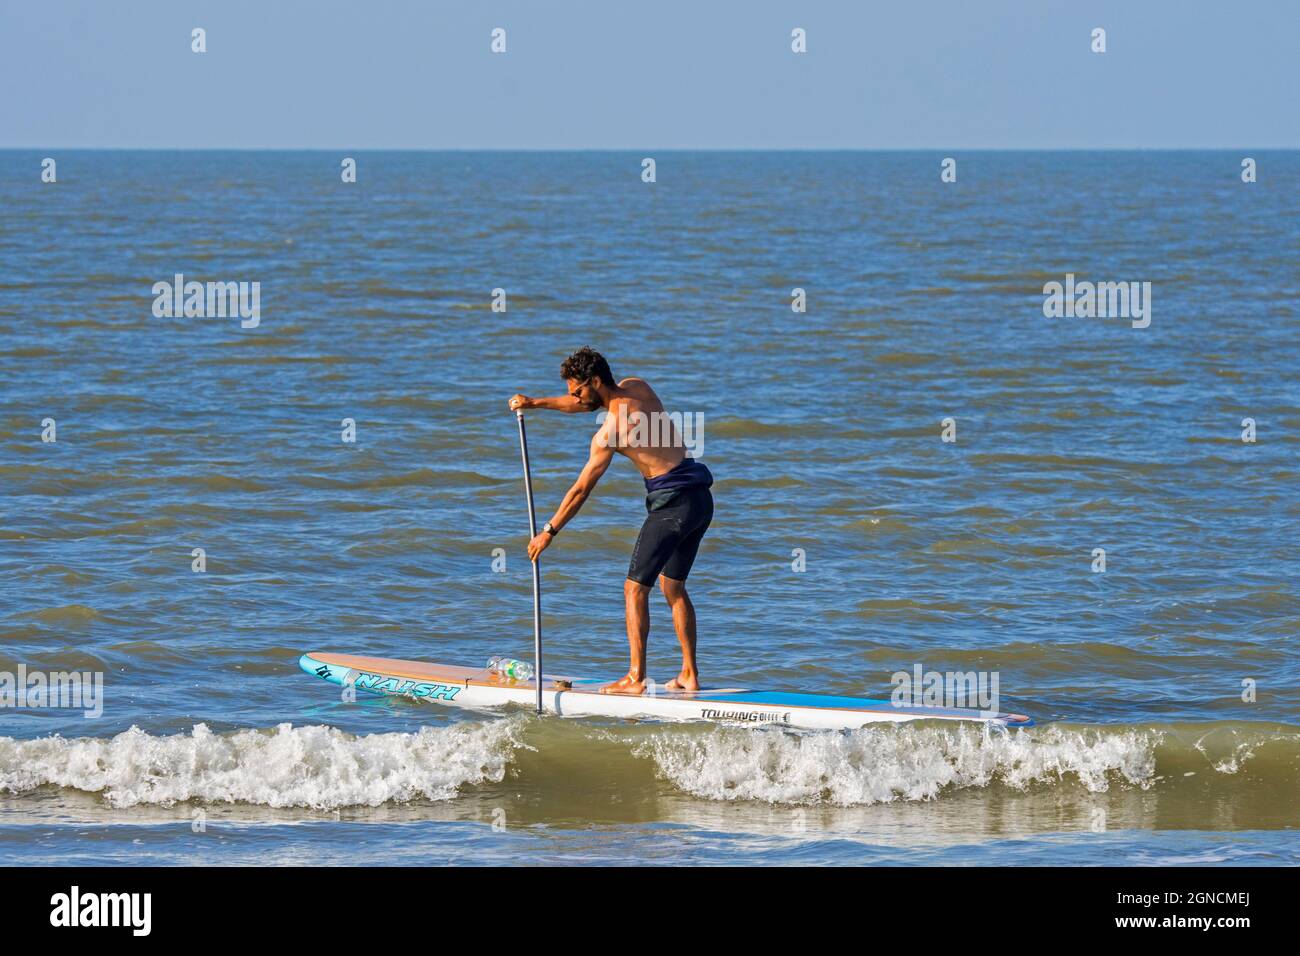 Un paddleboarder de sexe masculin pratiquant le paddleboarding de sports nautiques / Stand up paddle board / SUP le long de la côte de la mer du Nord Banque D'Images